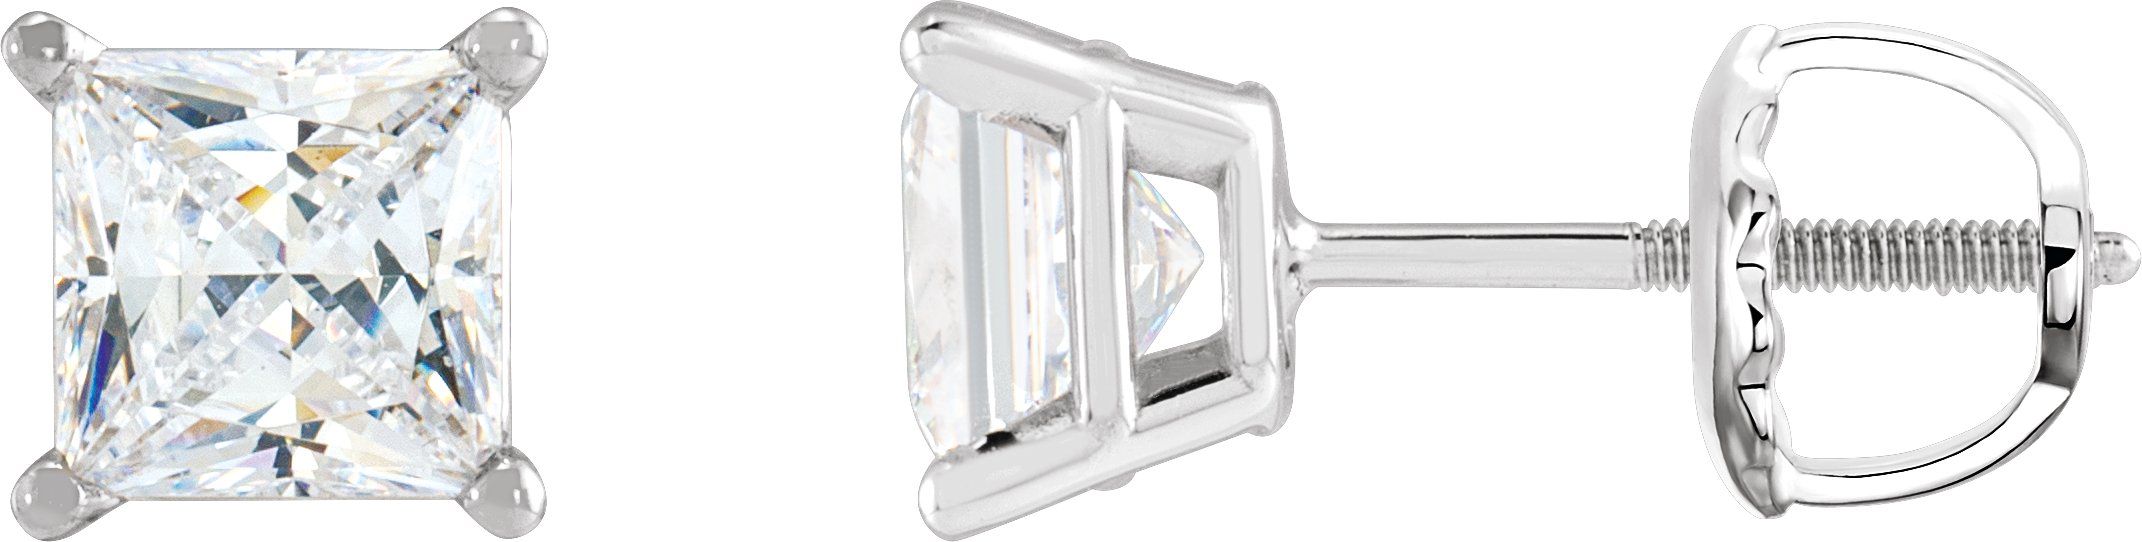 14K White 1/2 CTW Natural Diamond Earrings